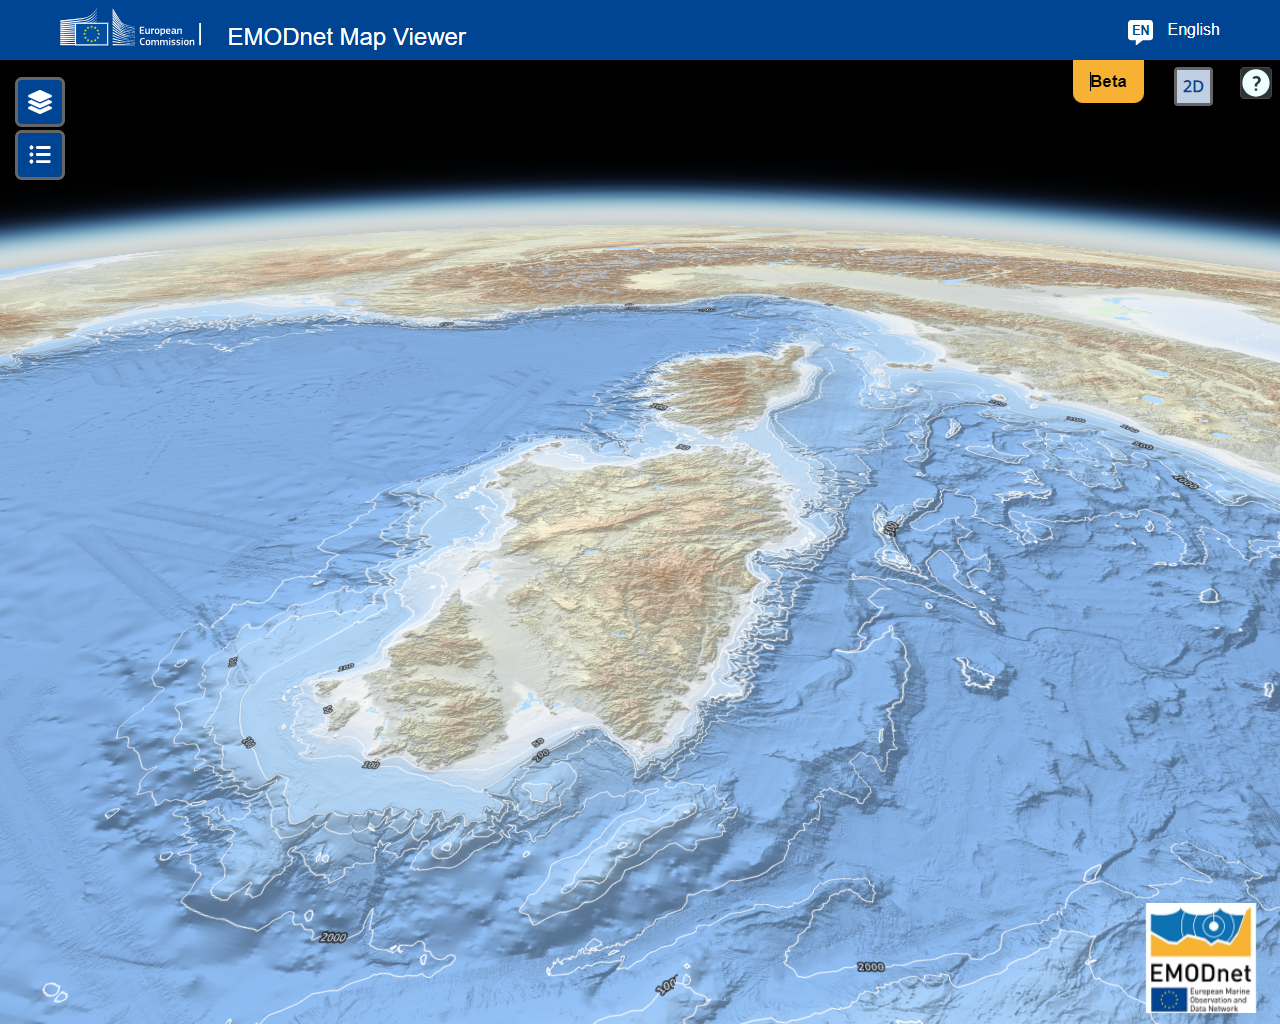 旧石器时代大西洋（现称为地中海）的 3D 水深测量 3